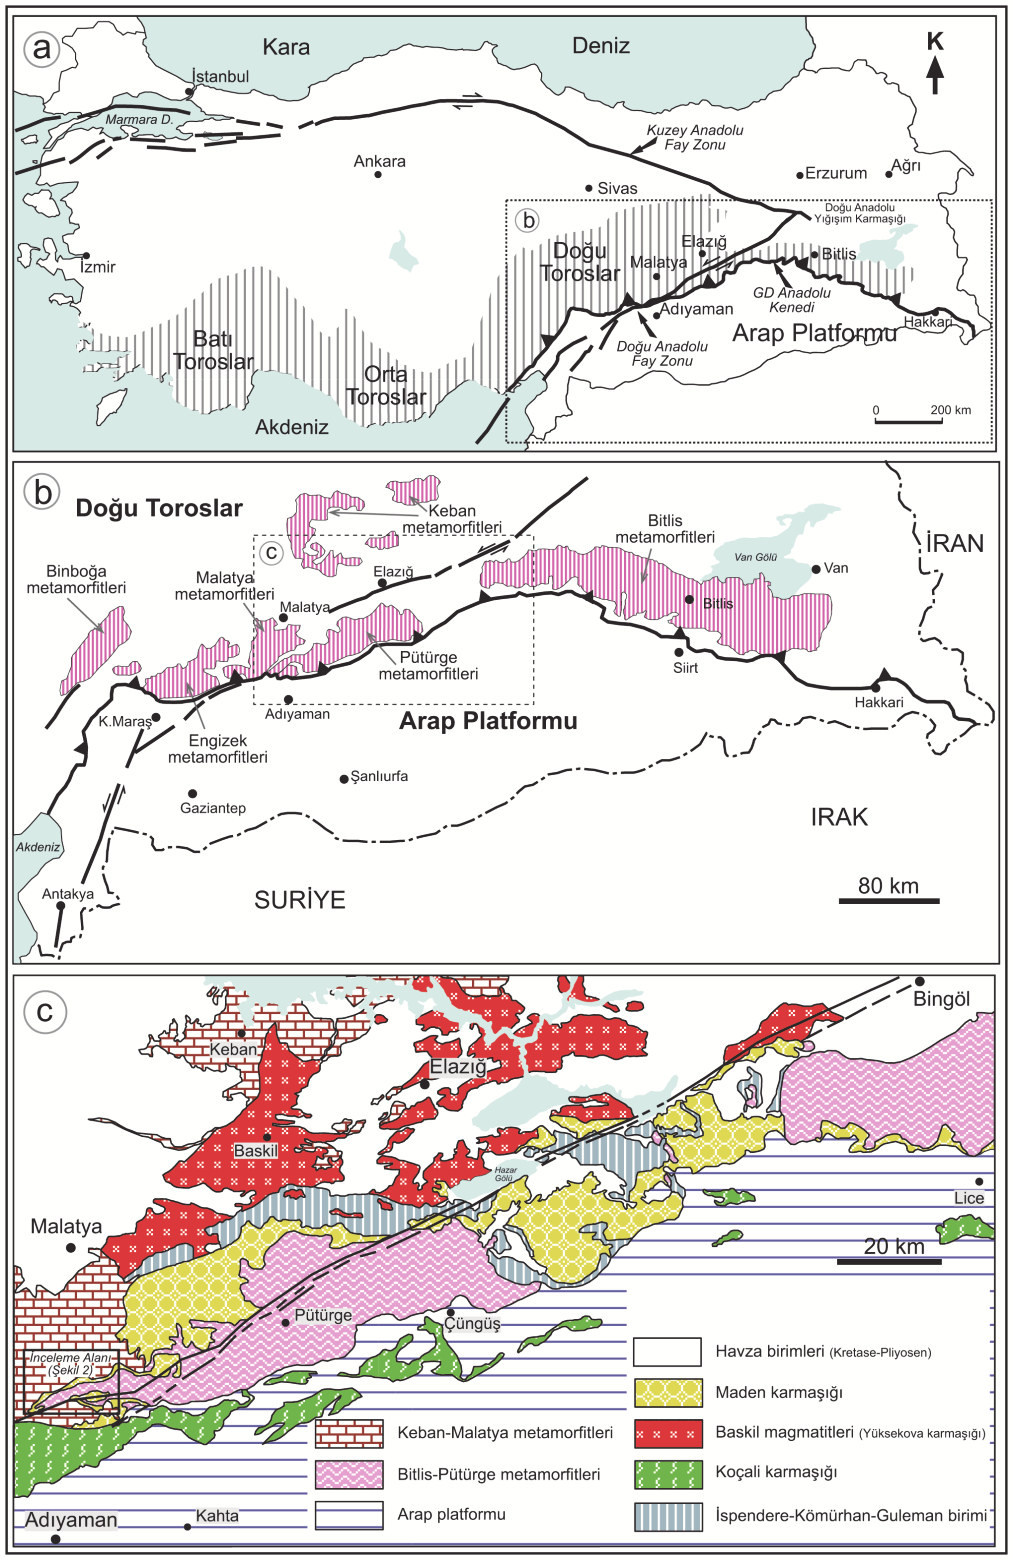 Özlem ŞAHİN, Veysel IŞIK Şekil 1. (a) Torosların konumu ve Türkiye de bazı ana tektonik yapılar. (b) Güneydoğu Anadolu kuşağı boyunca masiflerin genel konumu.